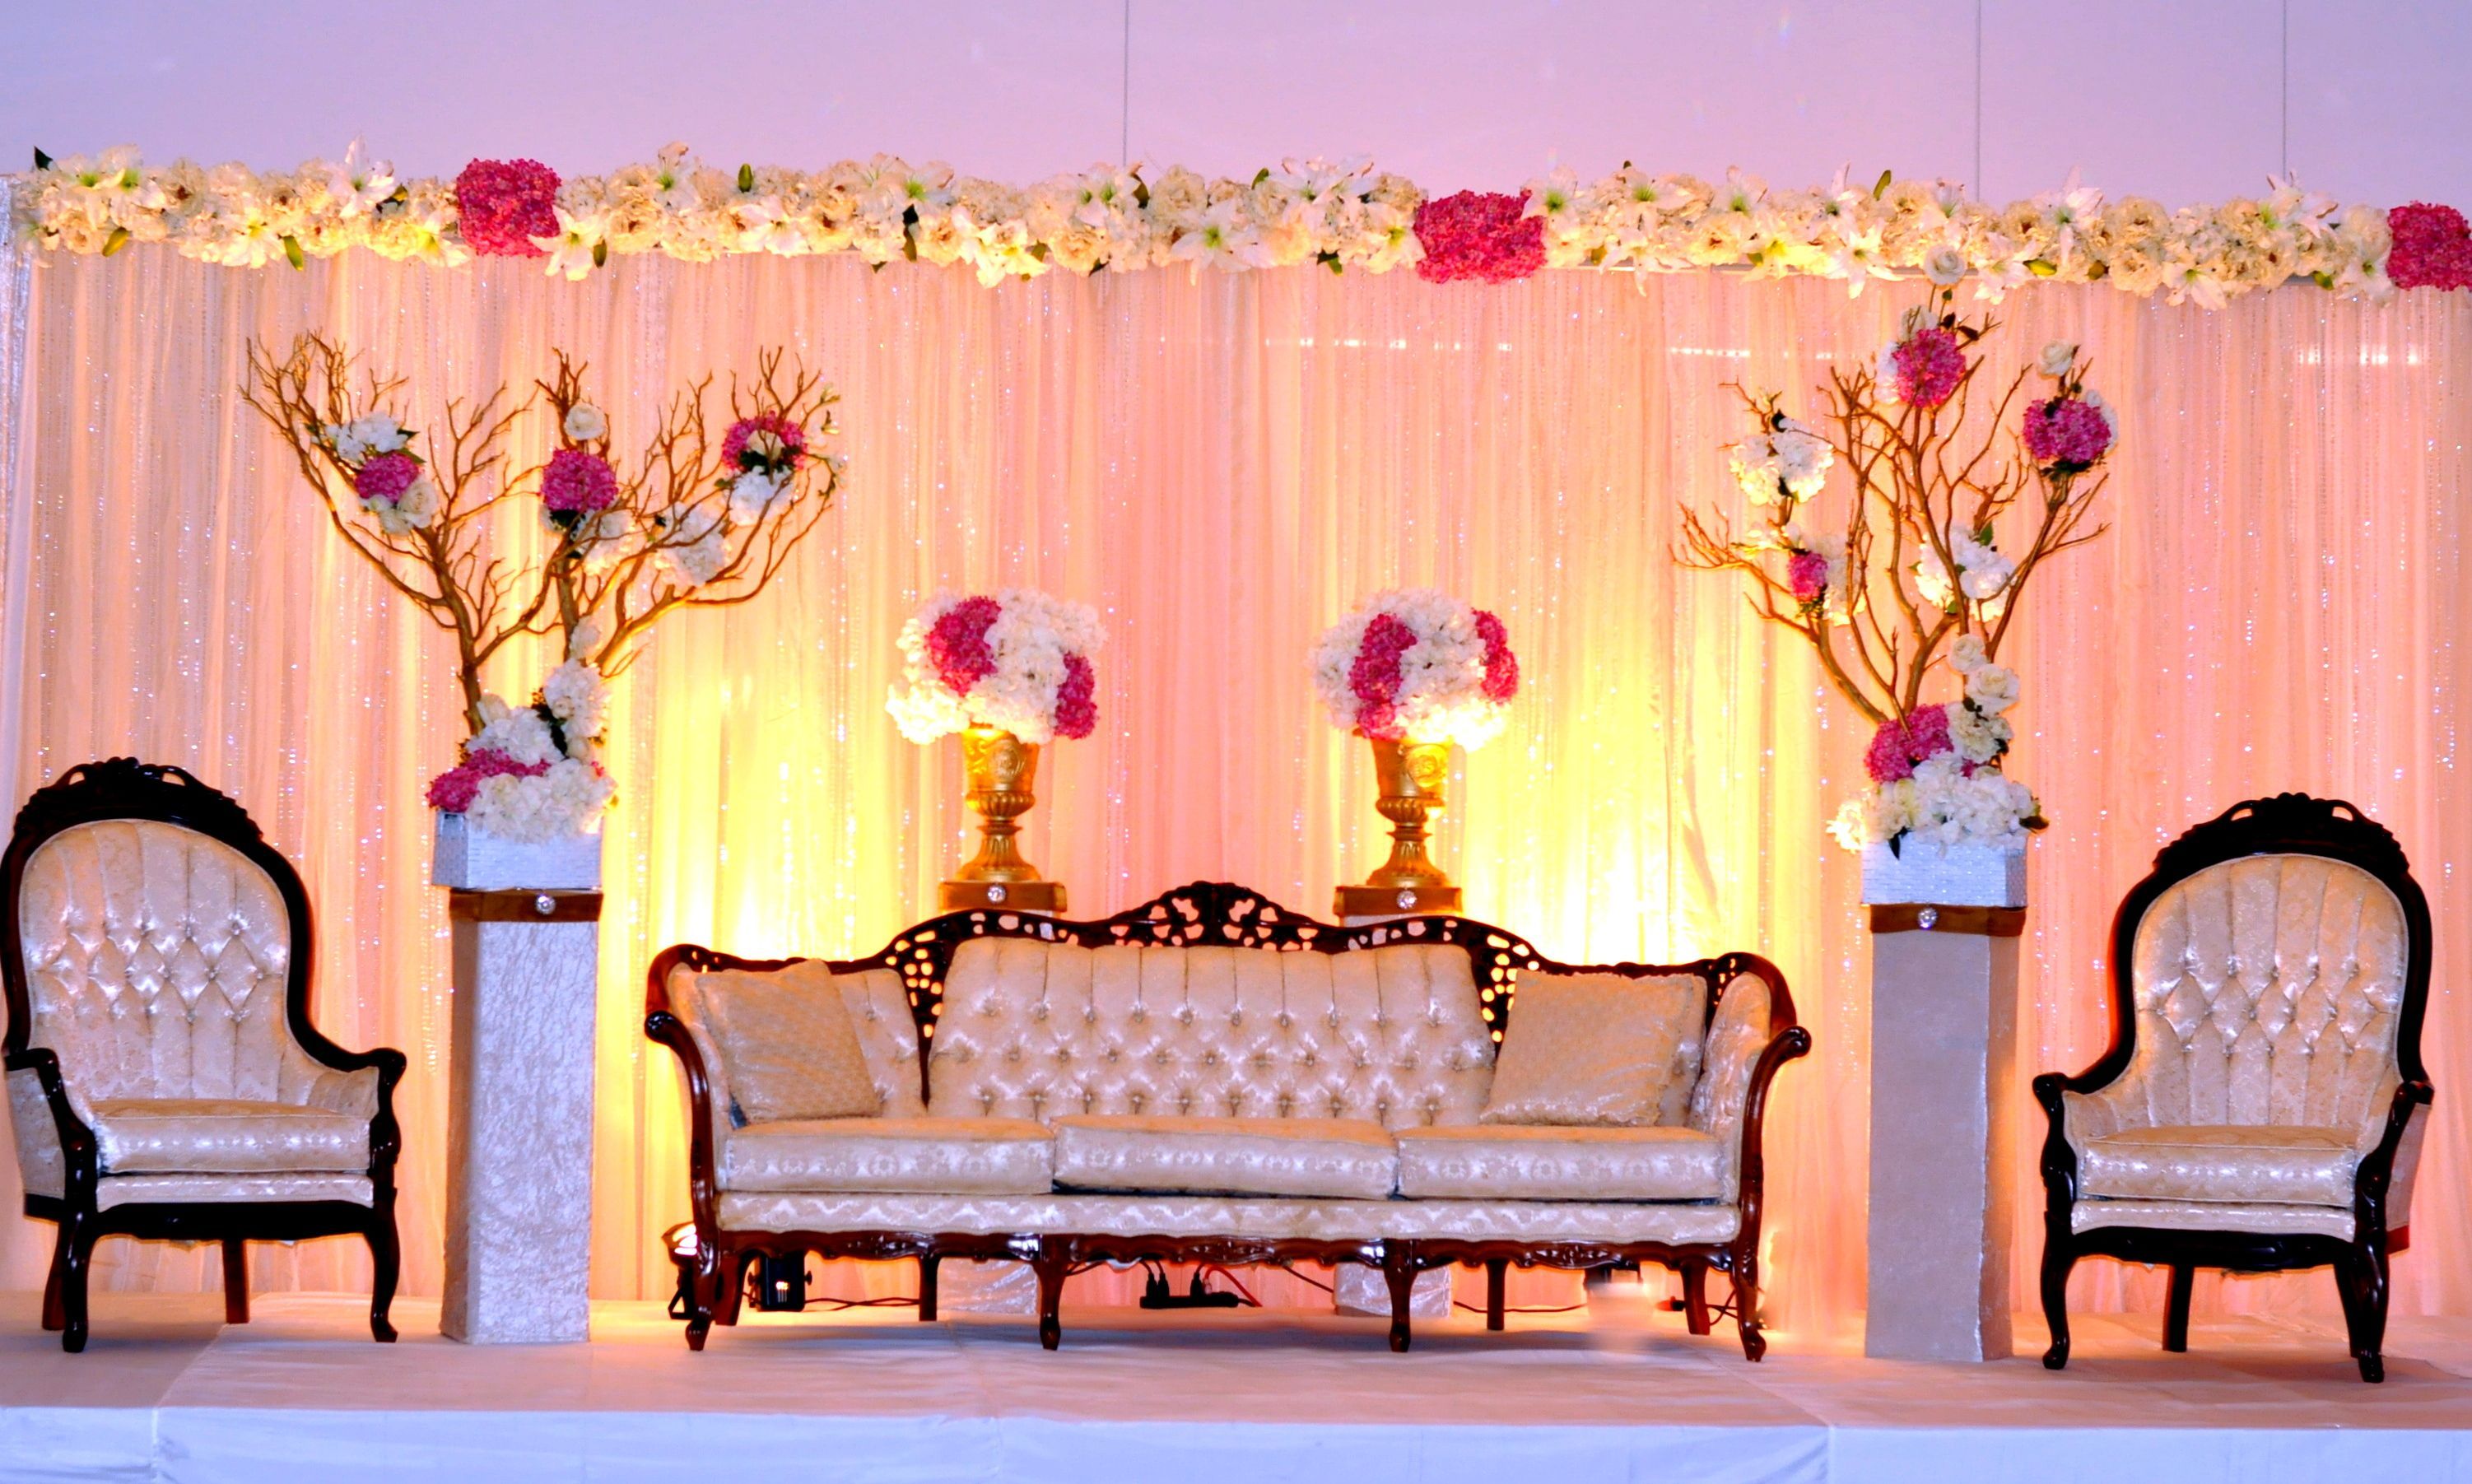 Hình nền sân khấu cưới: Những hình nền sân khấu cưới tuyệt đẹp sẽ giúp tôn lên vẻ đẹp rực rỡ của ngày cưới. Hãy xem qua bộ sưu tập hình nền sân khấu cưới của chúng tôi để tìm kiếm ý tưởng trang trí hoàn hảo cho buổi lễ của bạn.